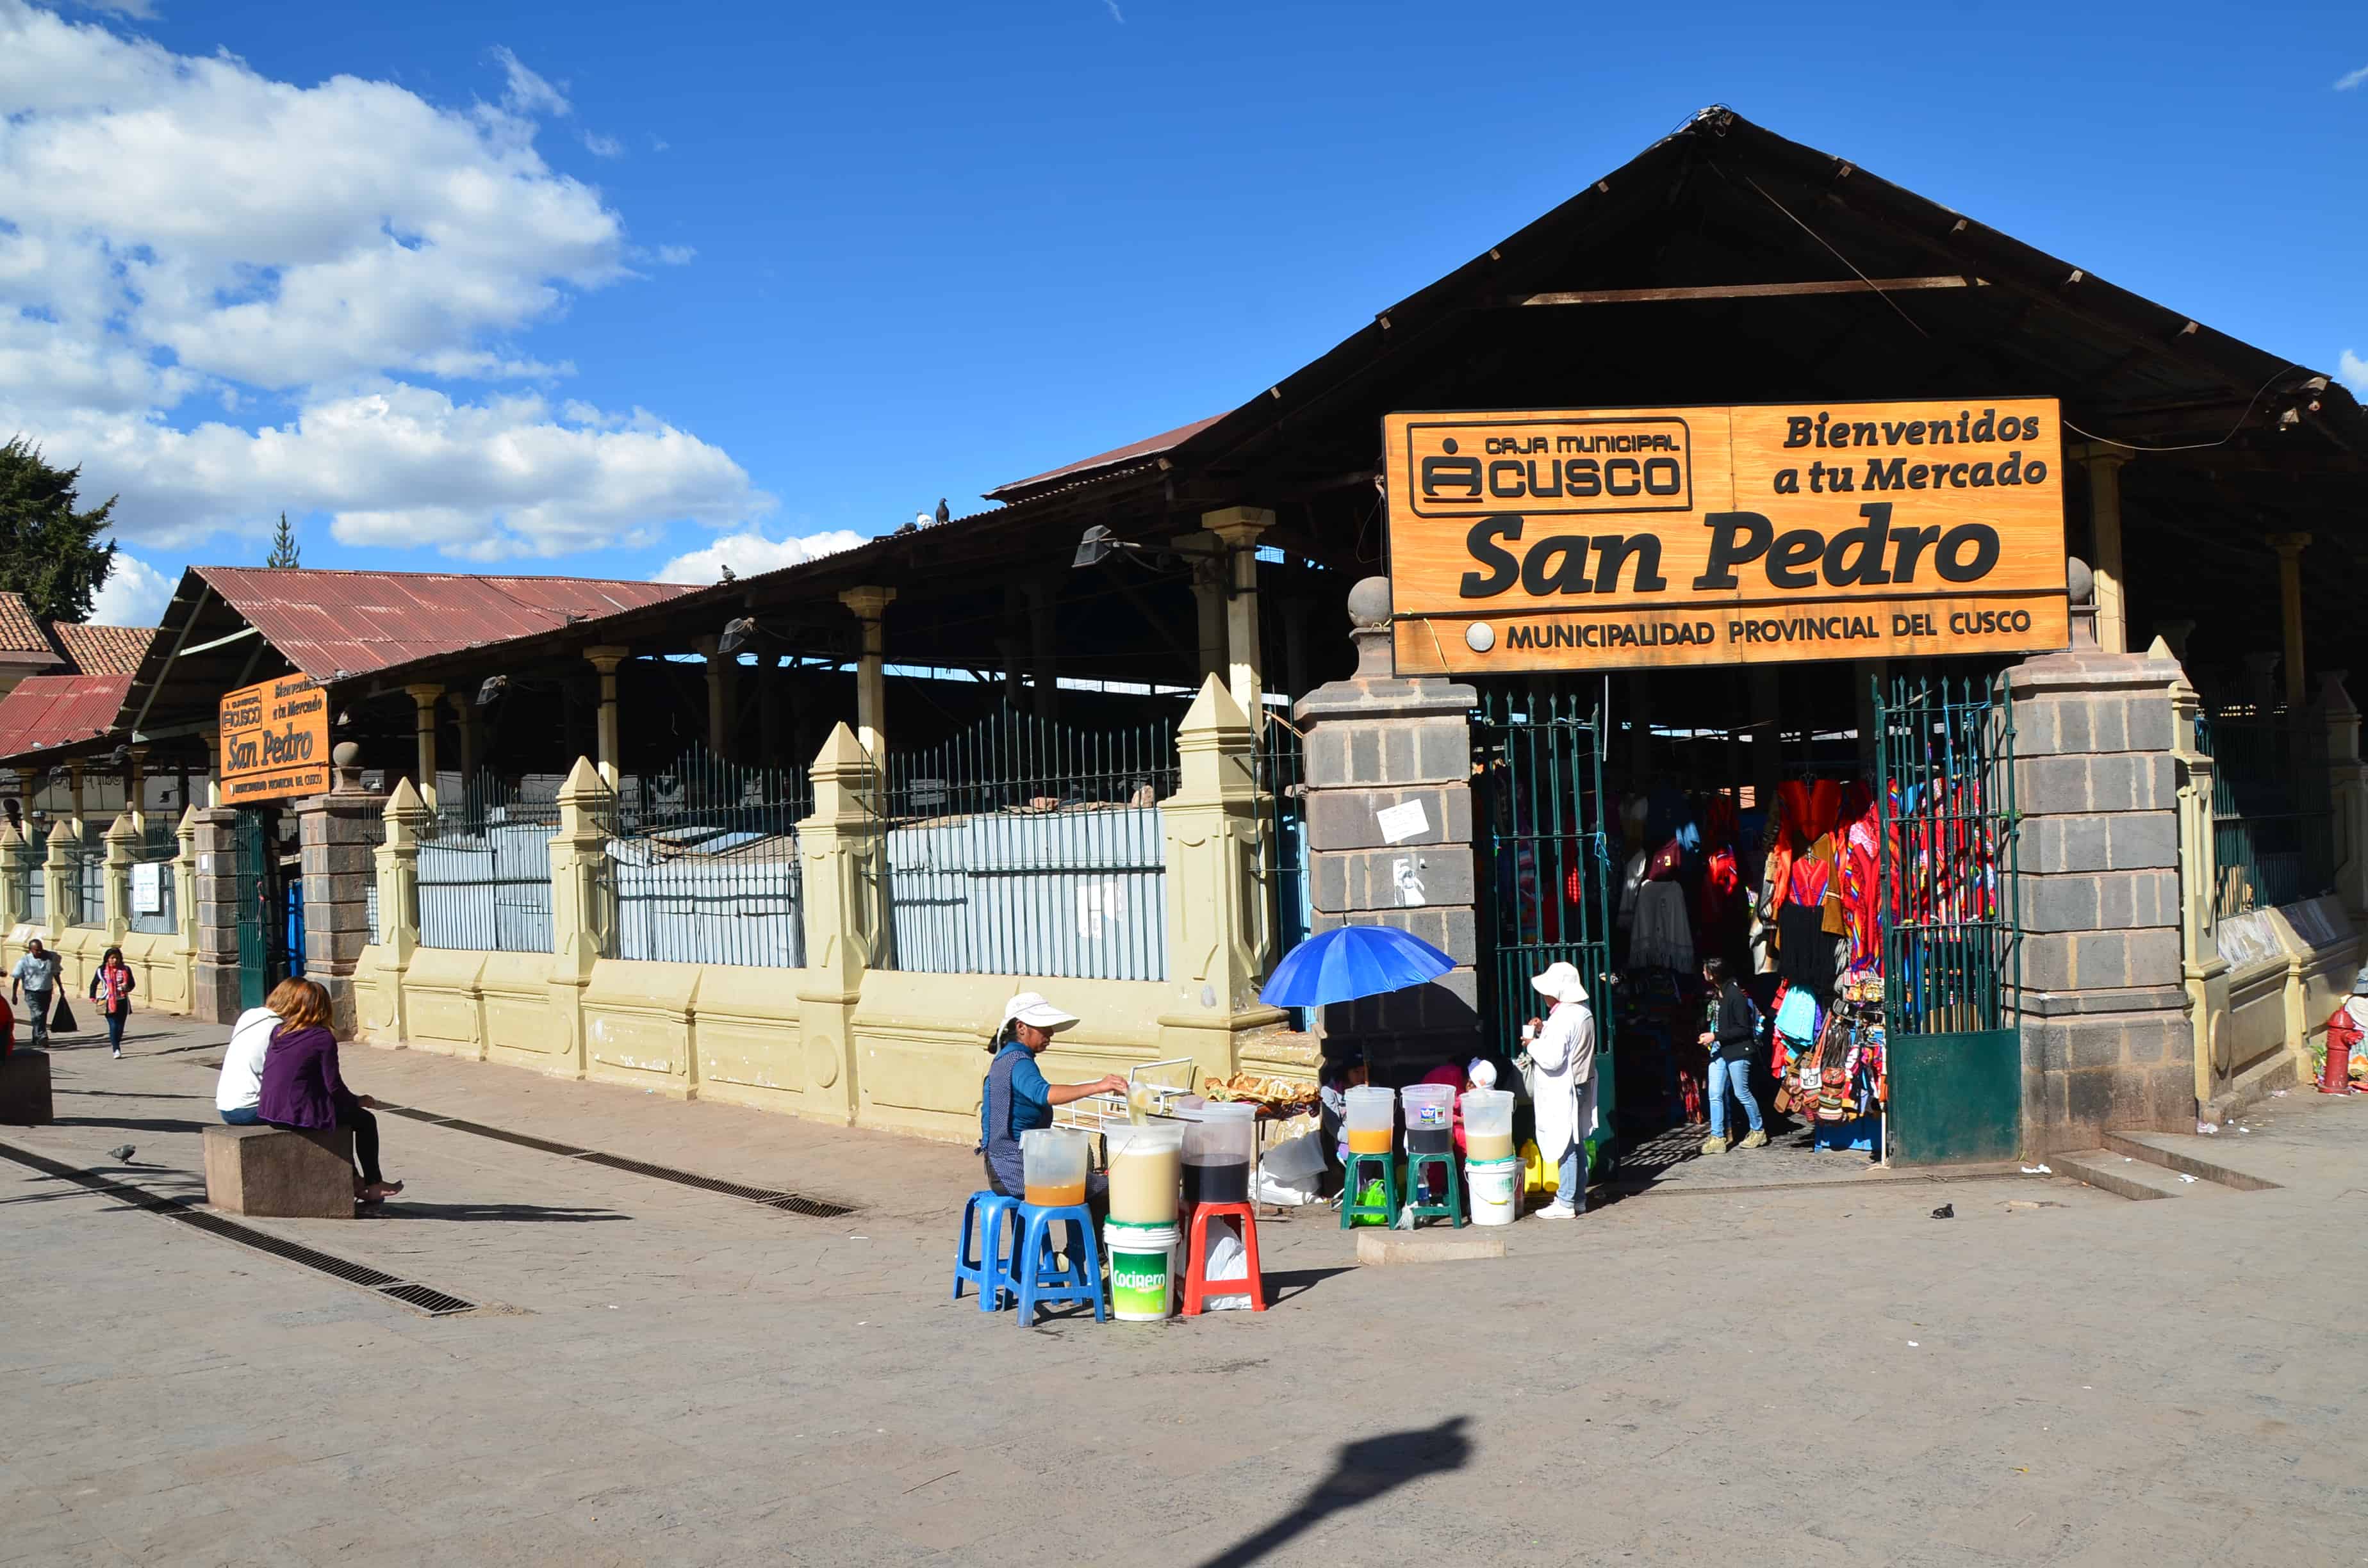 Mercado San Pedro in Cusco, Peru